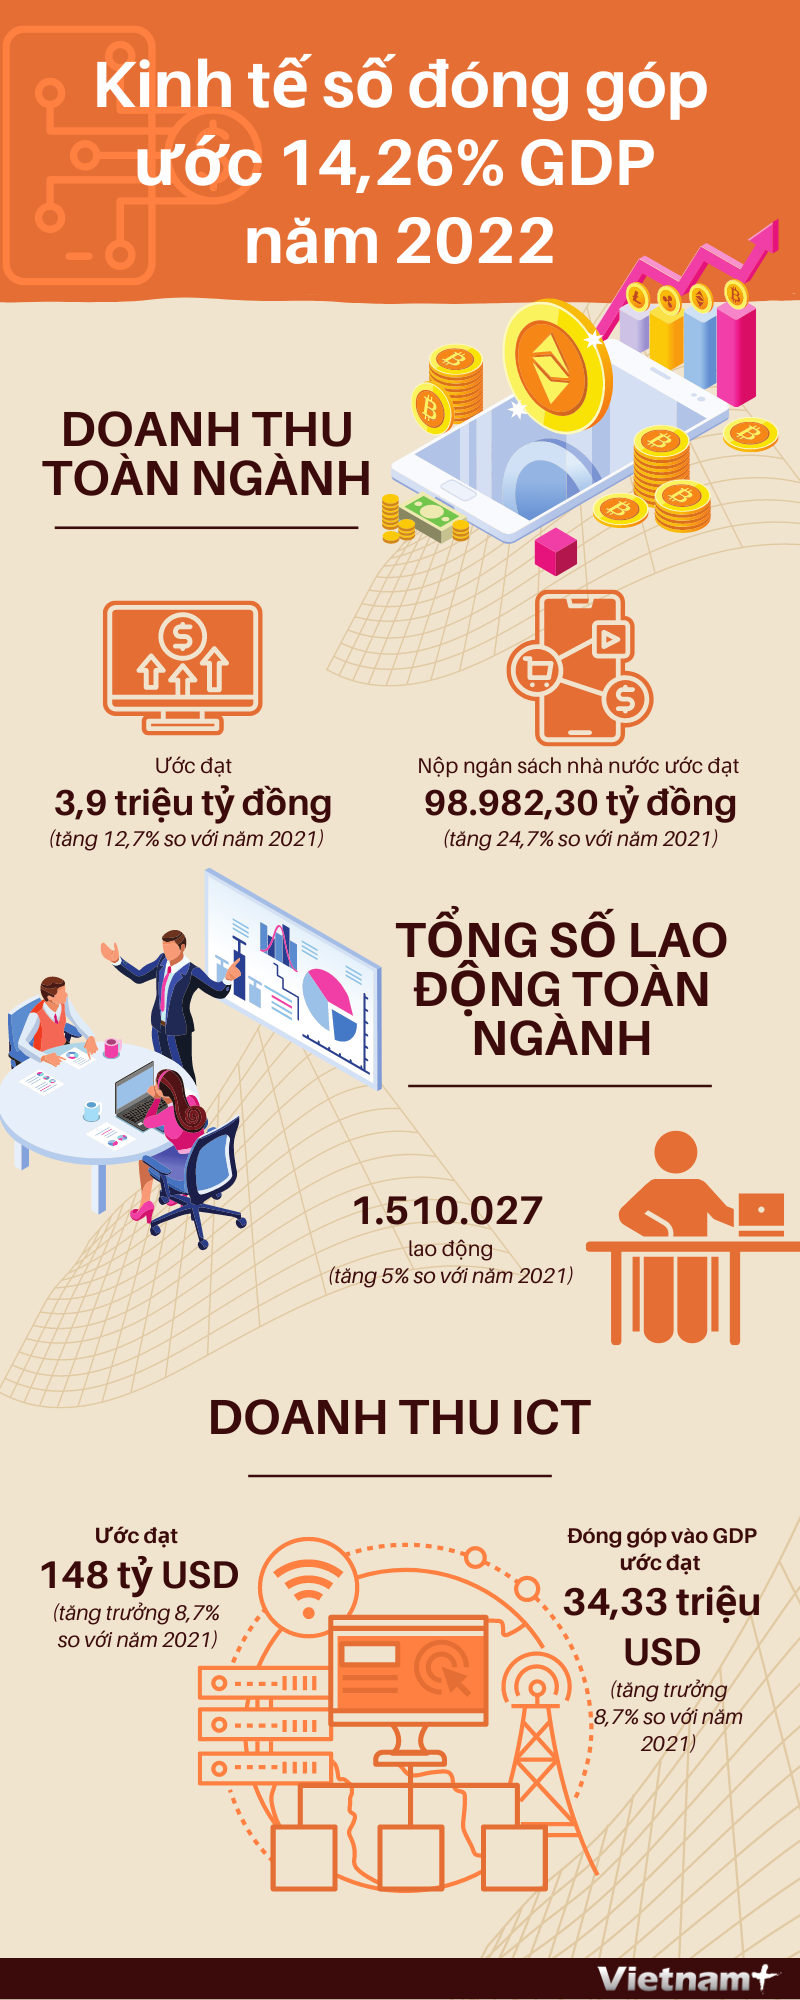 Kinh tế số đóng góp khoảng 14,26% vào GDP Việt Nam năm 2022